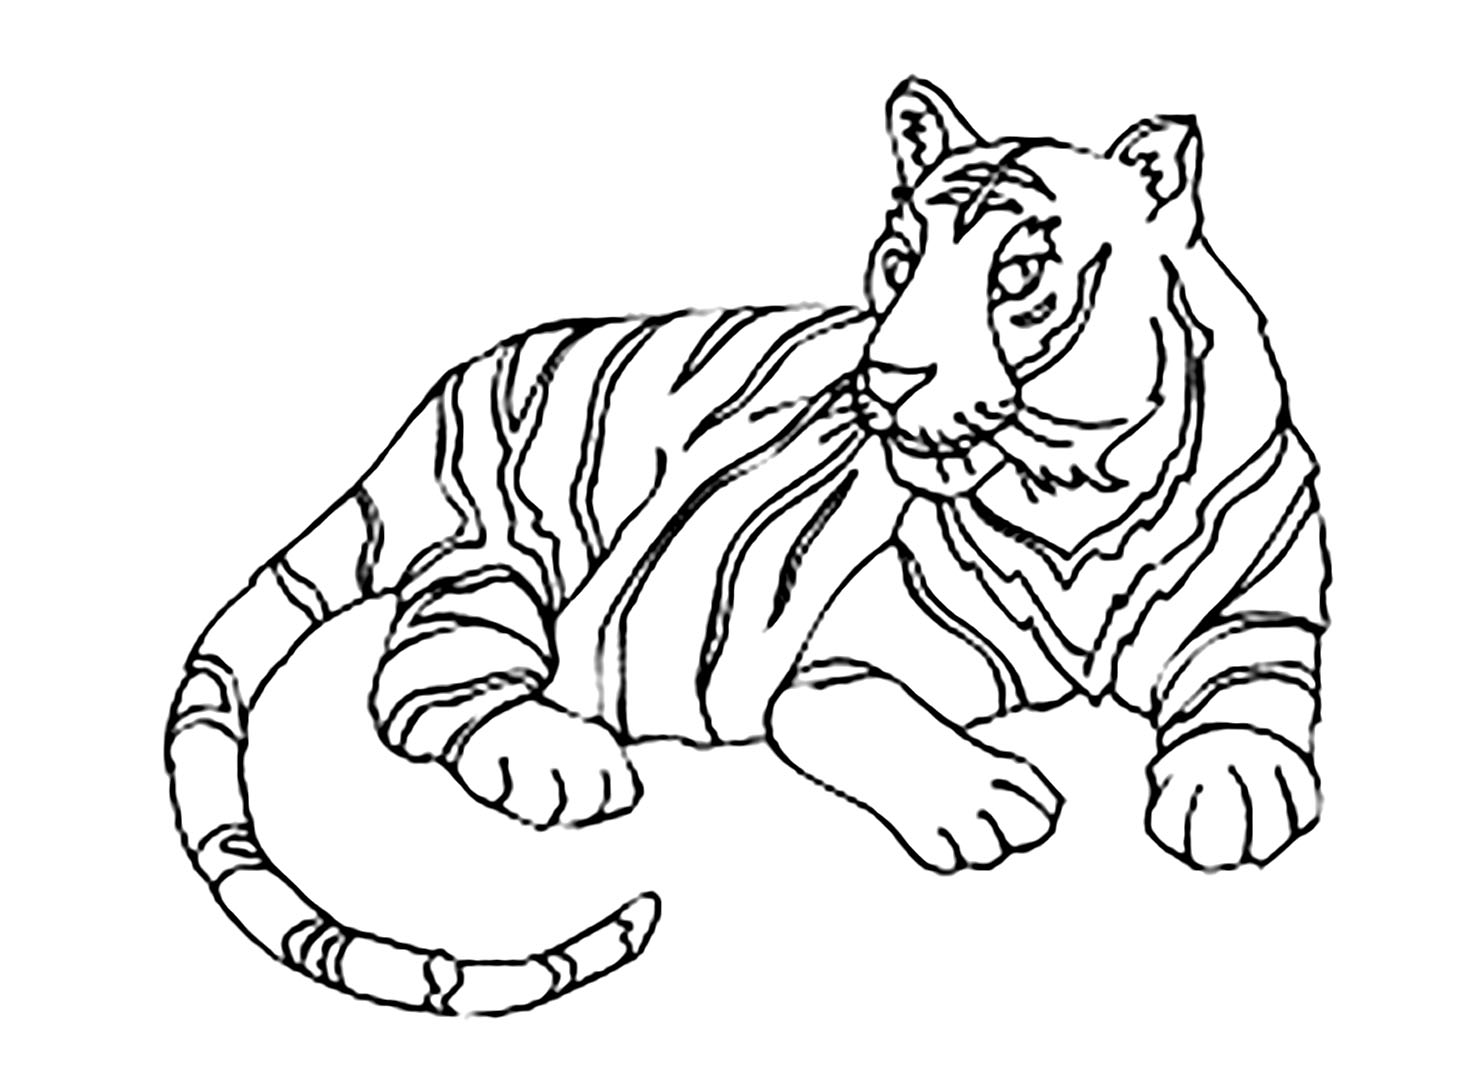 Tranh tô màu con hổ đang nằm rất đẹp